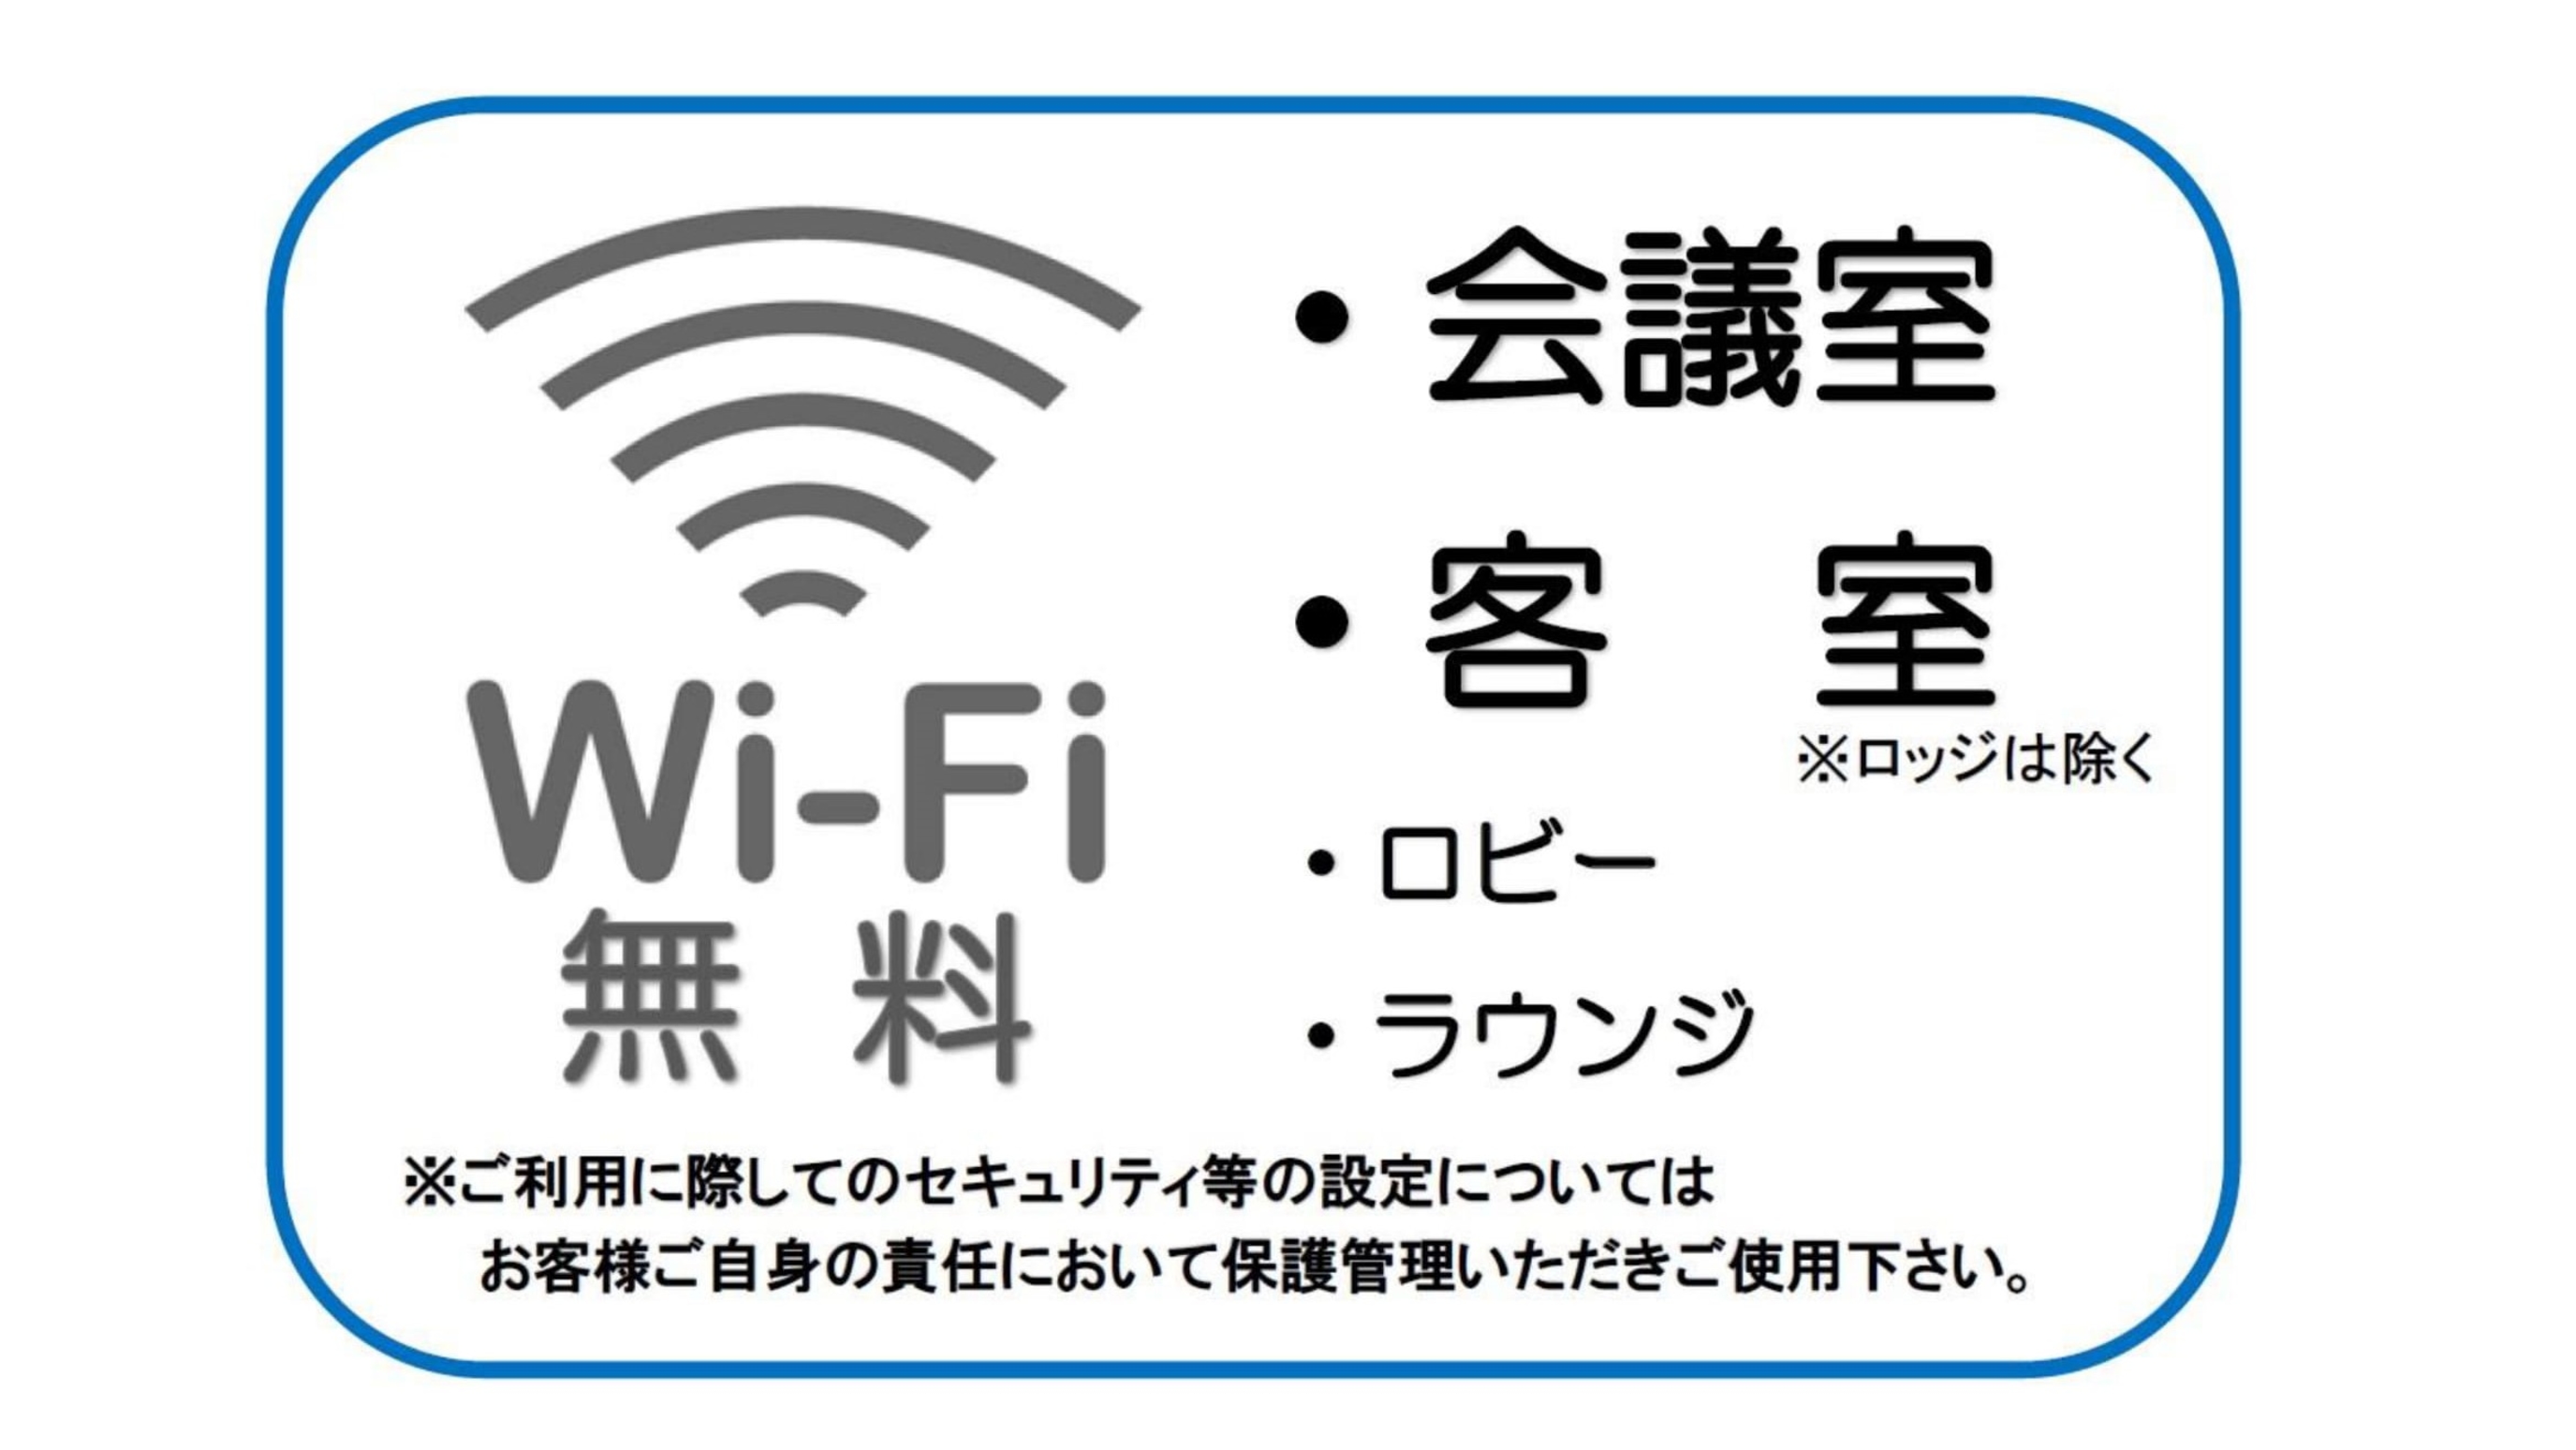 Wi-Fi 完備